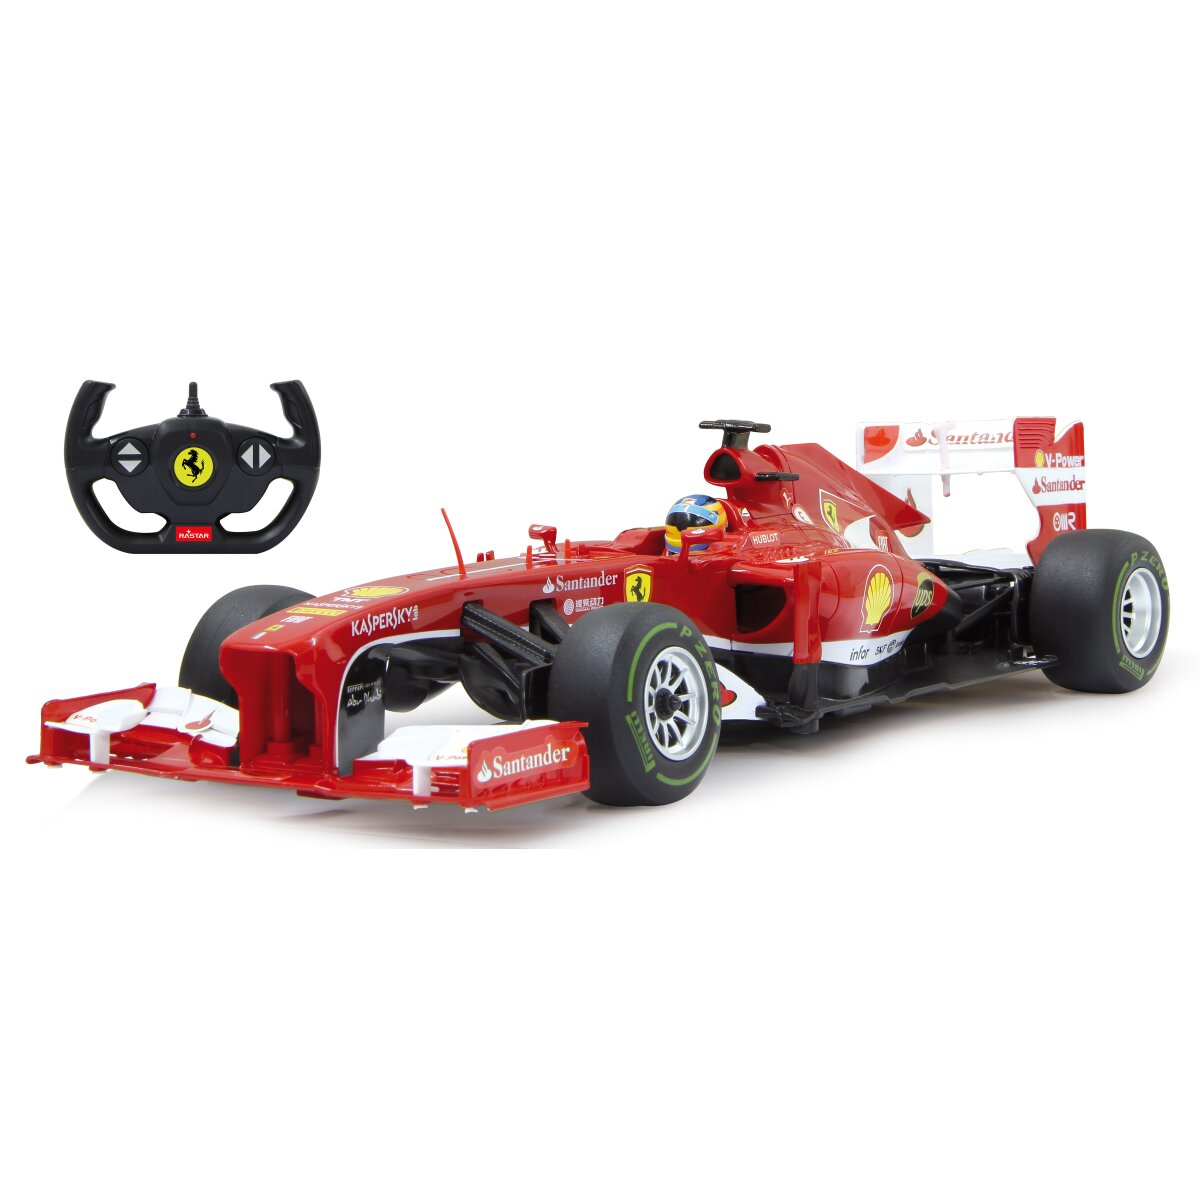 Ferrari F1 1:12 rot 2,4GHz